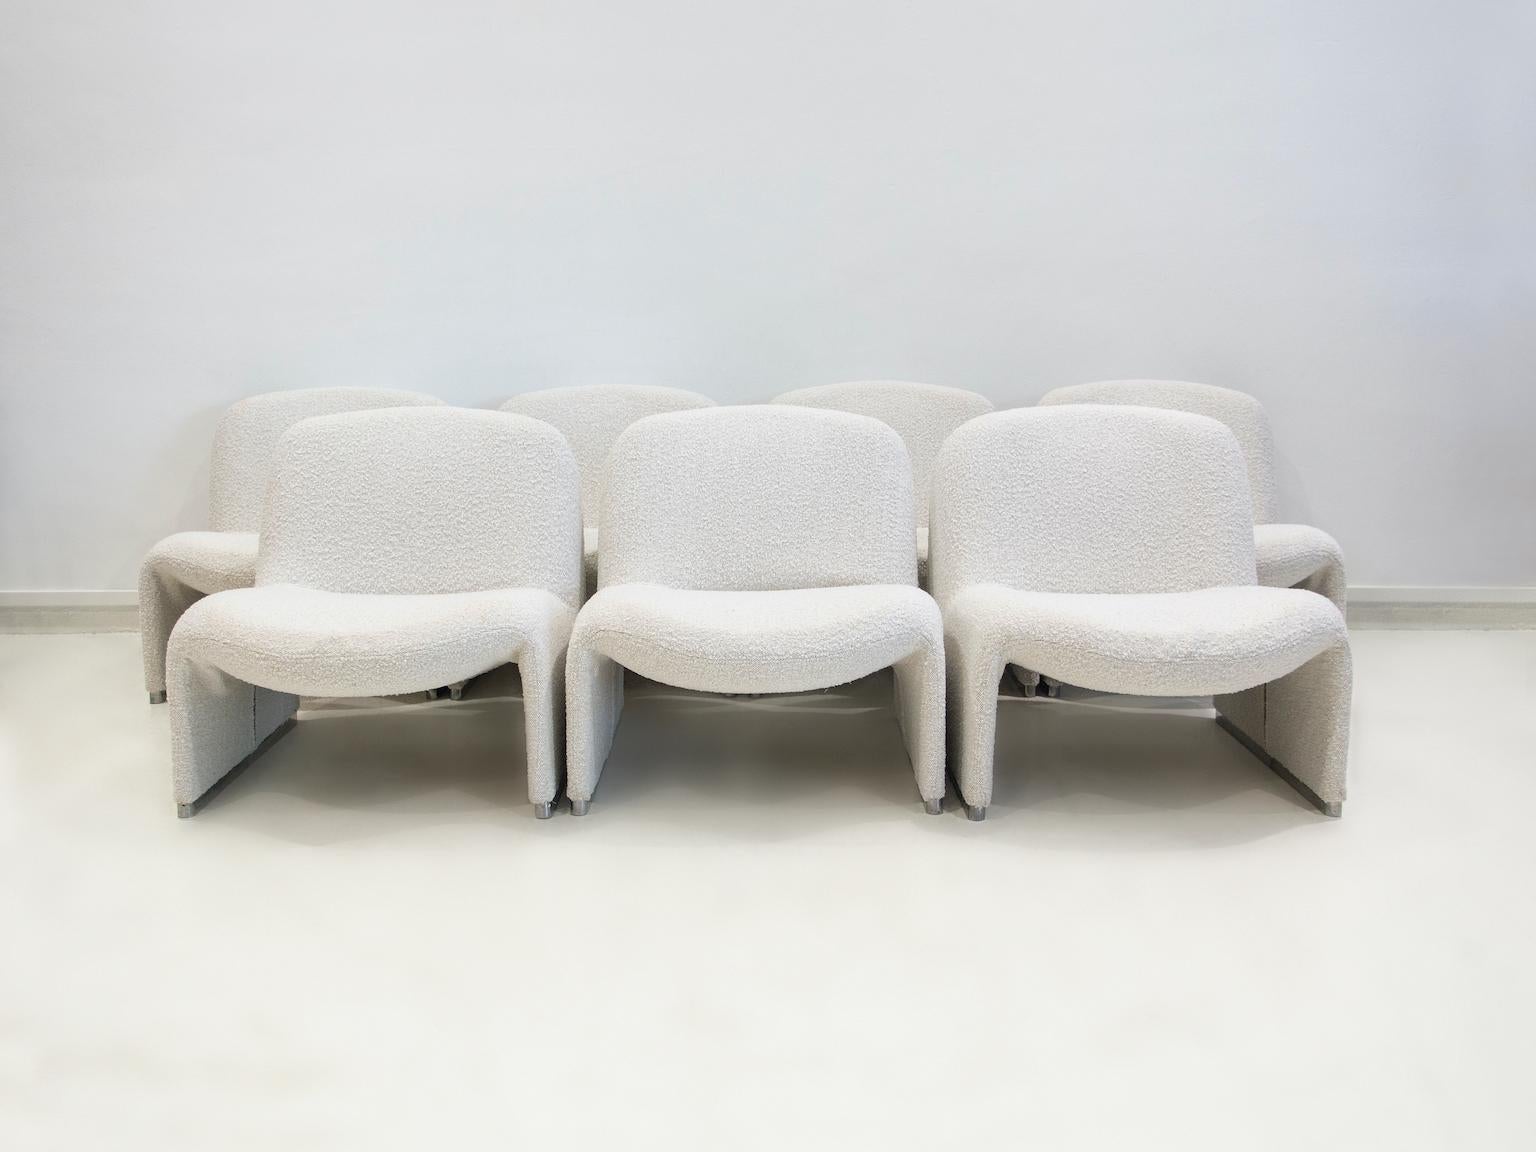 Fünf Alky-Sessel auf Aluminiumkufen, neu gepolstert mit weißem Bouclé-Stoff. Alky wurde 1969 von Giancarlo Piretti entworfen. Hergestellt und gekennzeichnet von Anonima Castelli. Vielseitige und bequeme Stühle mit weichen Linien. Bitte beachten Sie,